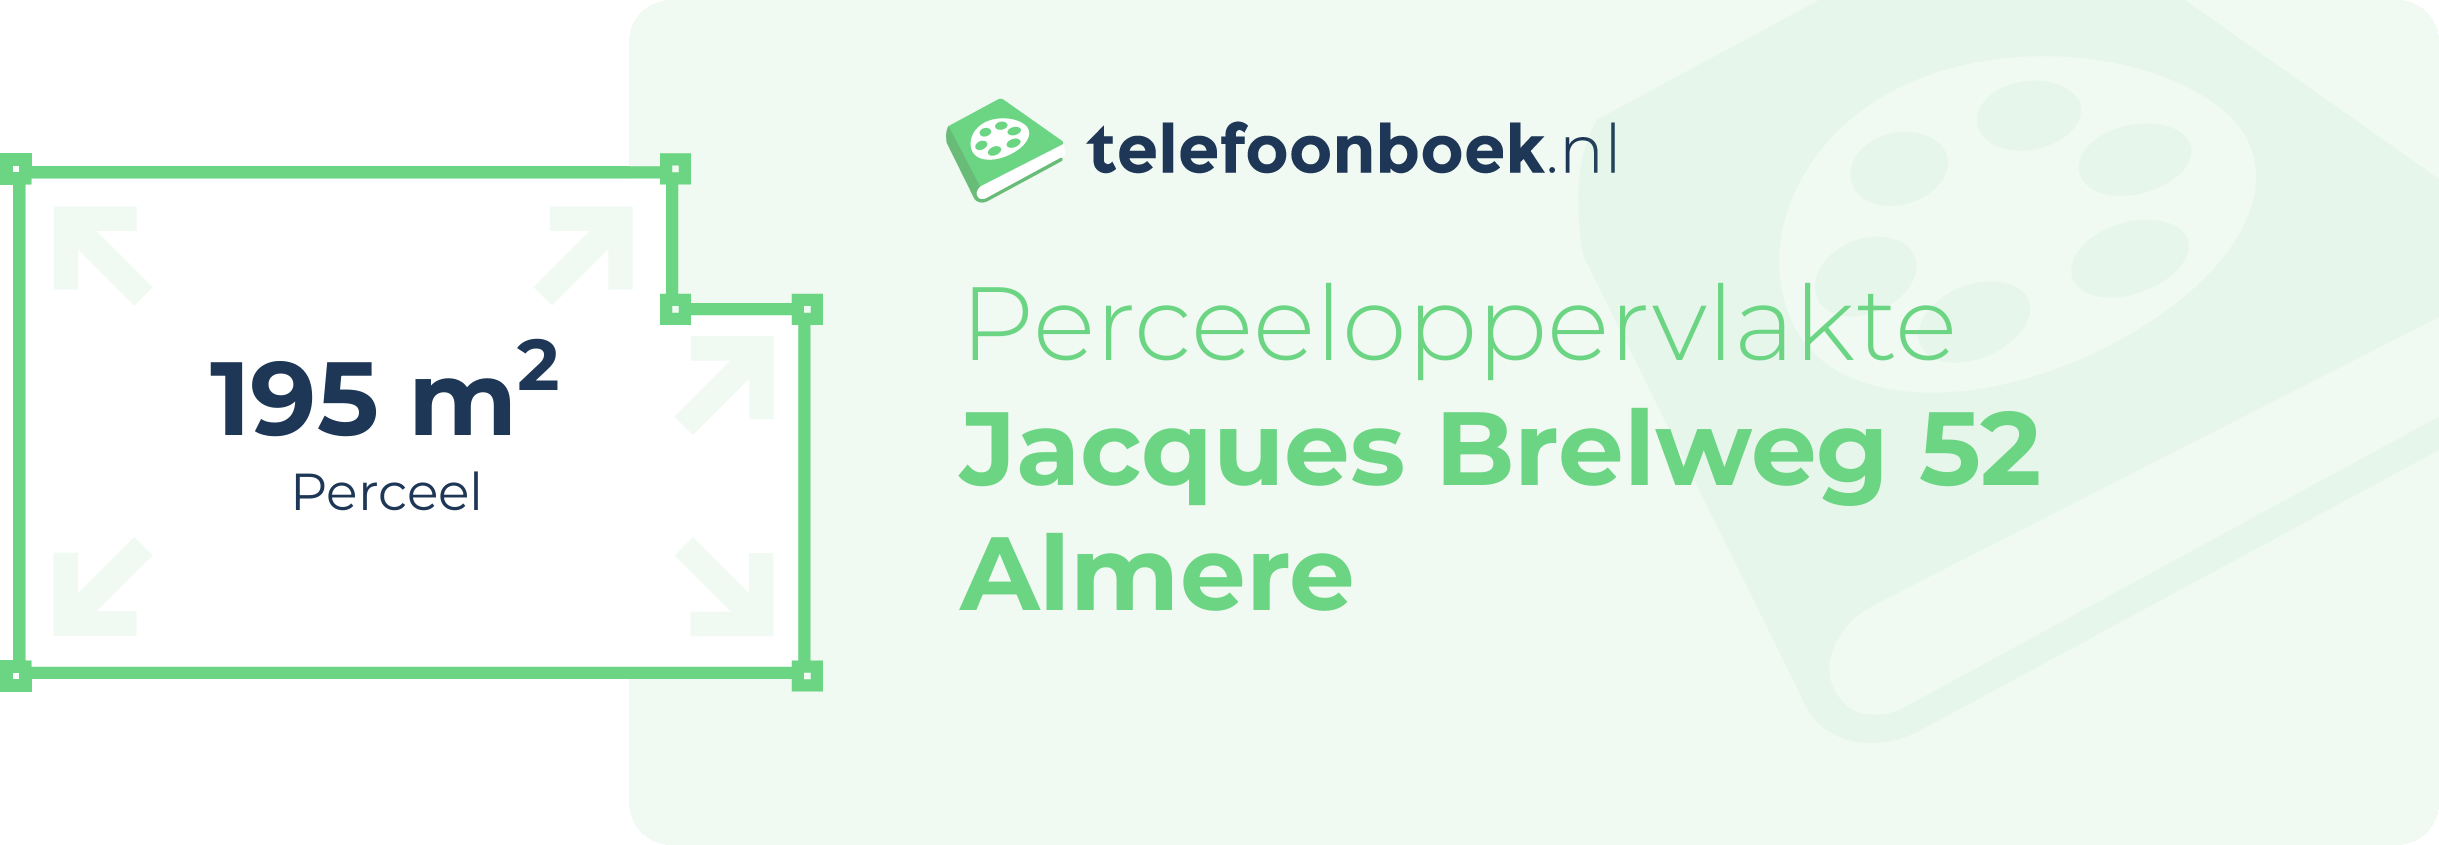 Perceeloppervlakte Jacques Brelweg 52 Almere